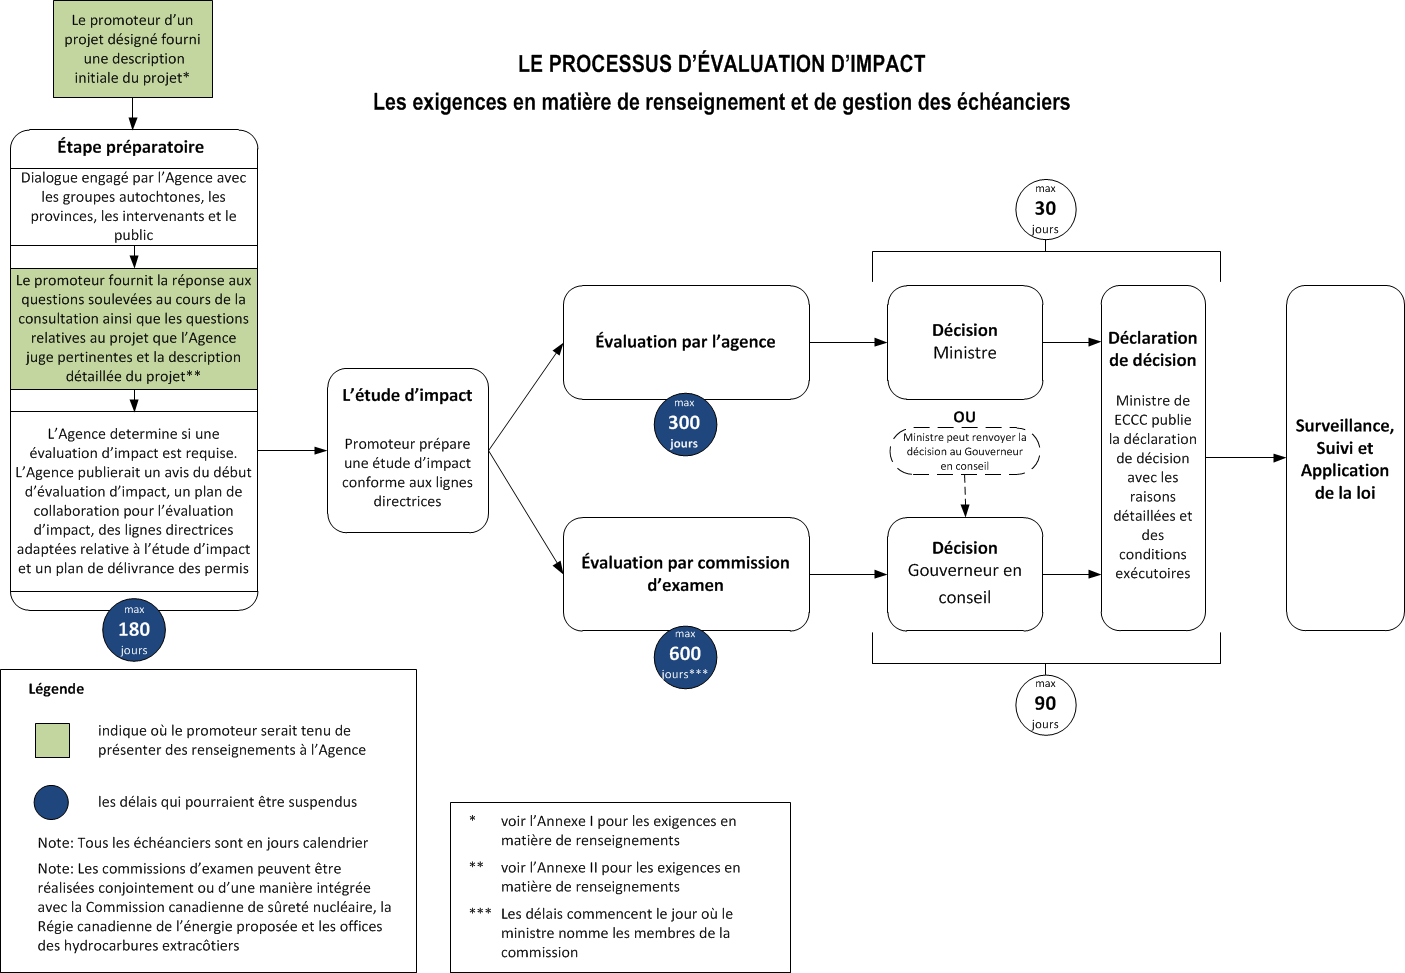 Le processus d'évaluation d'impact : Les exigences en matière de renseignement et de gestion des échéanciers